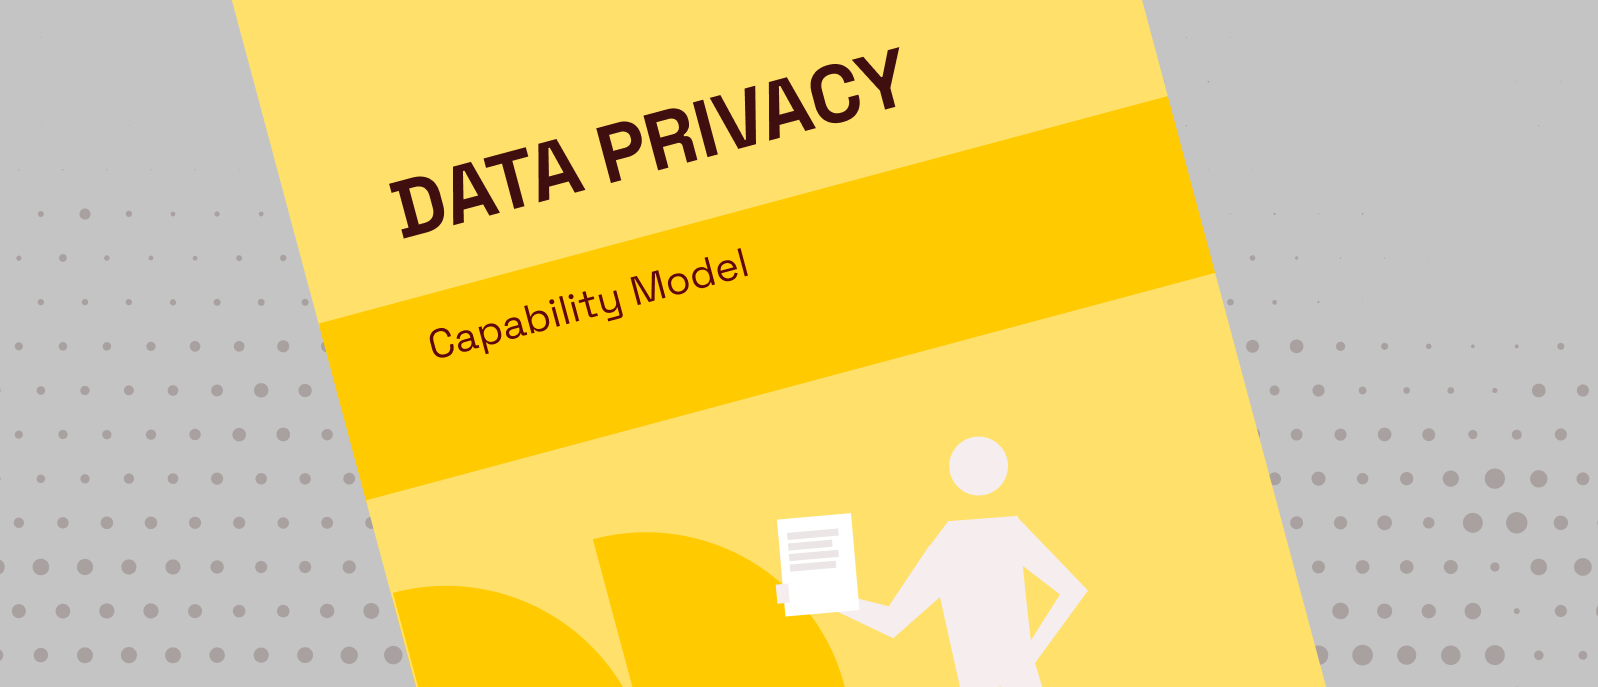 Data Privacy Capability Model